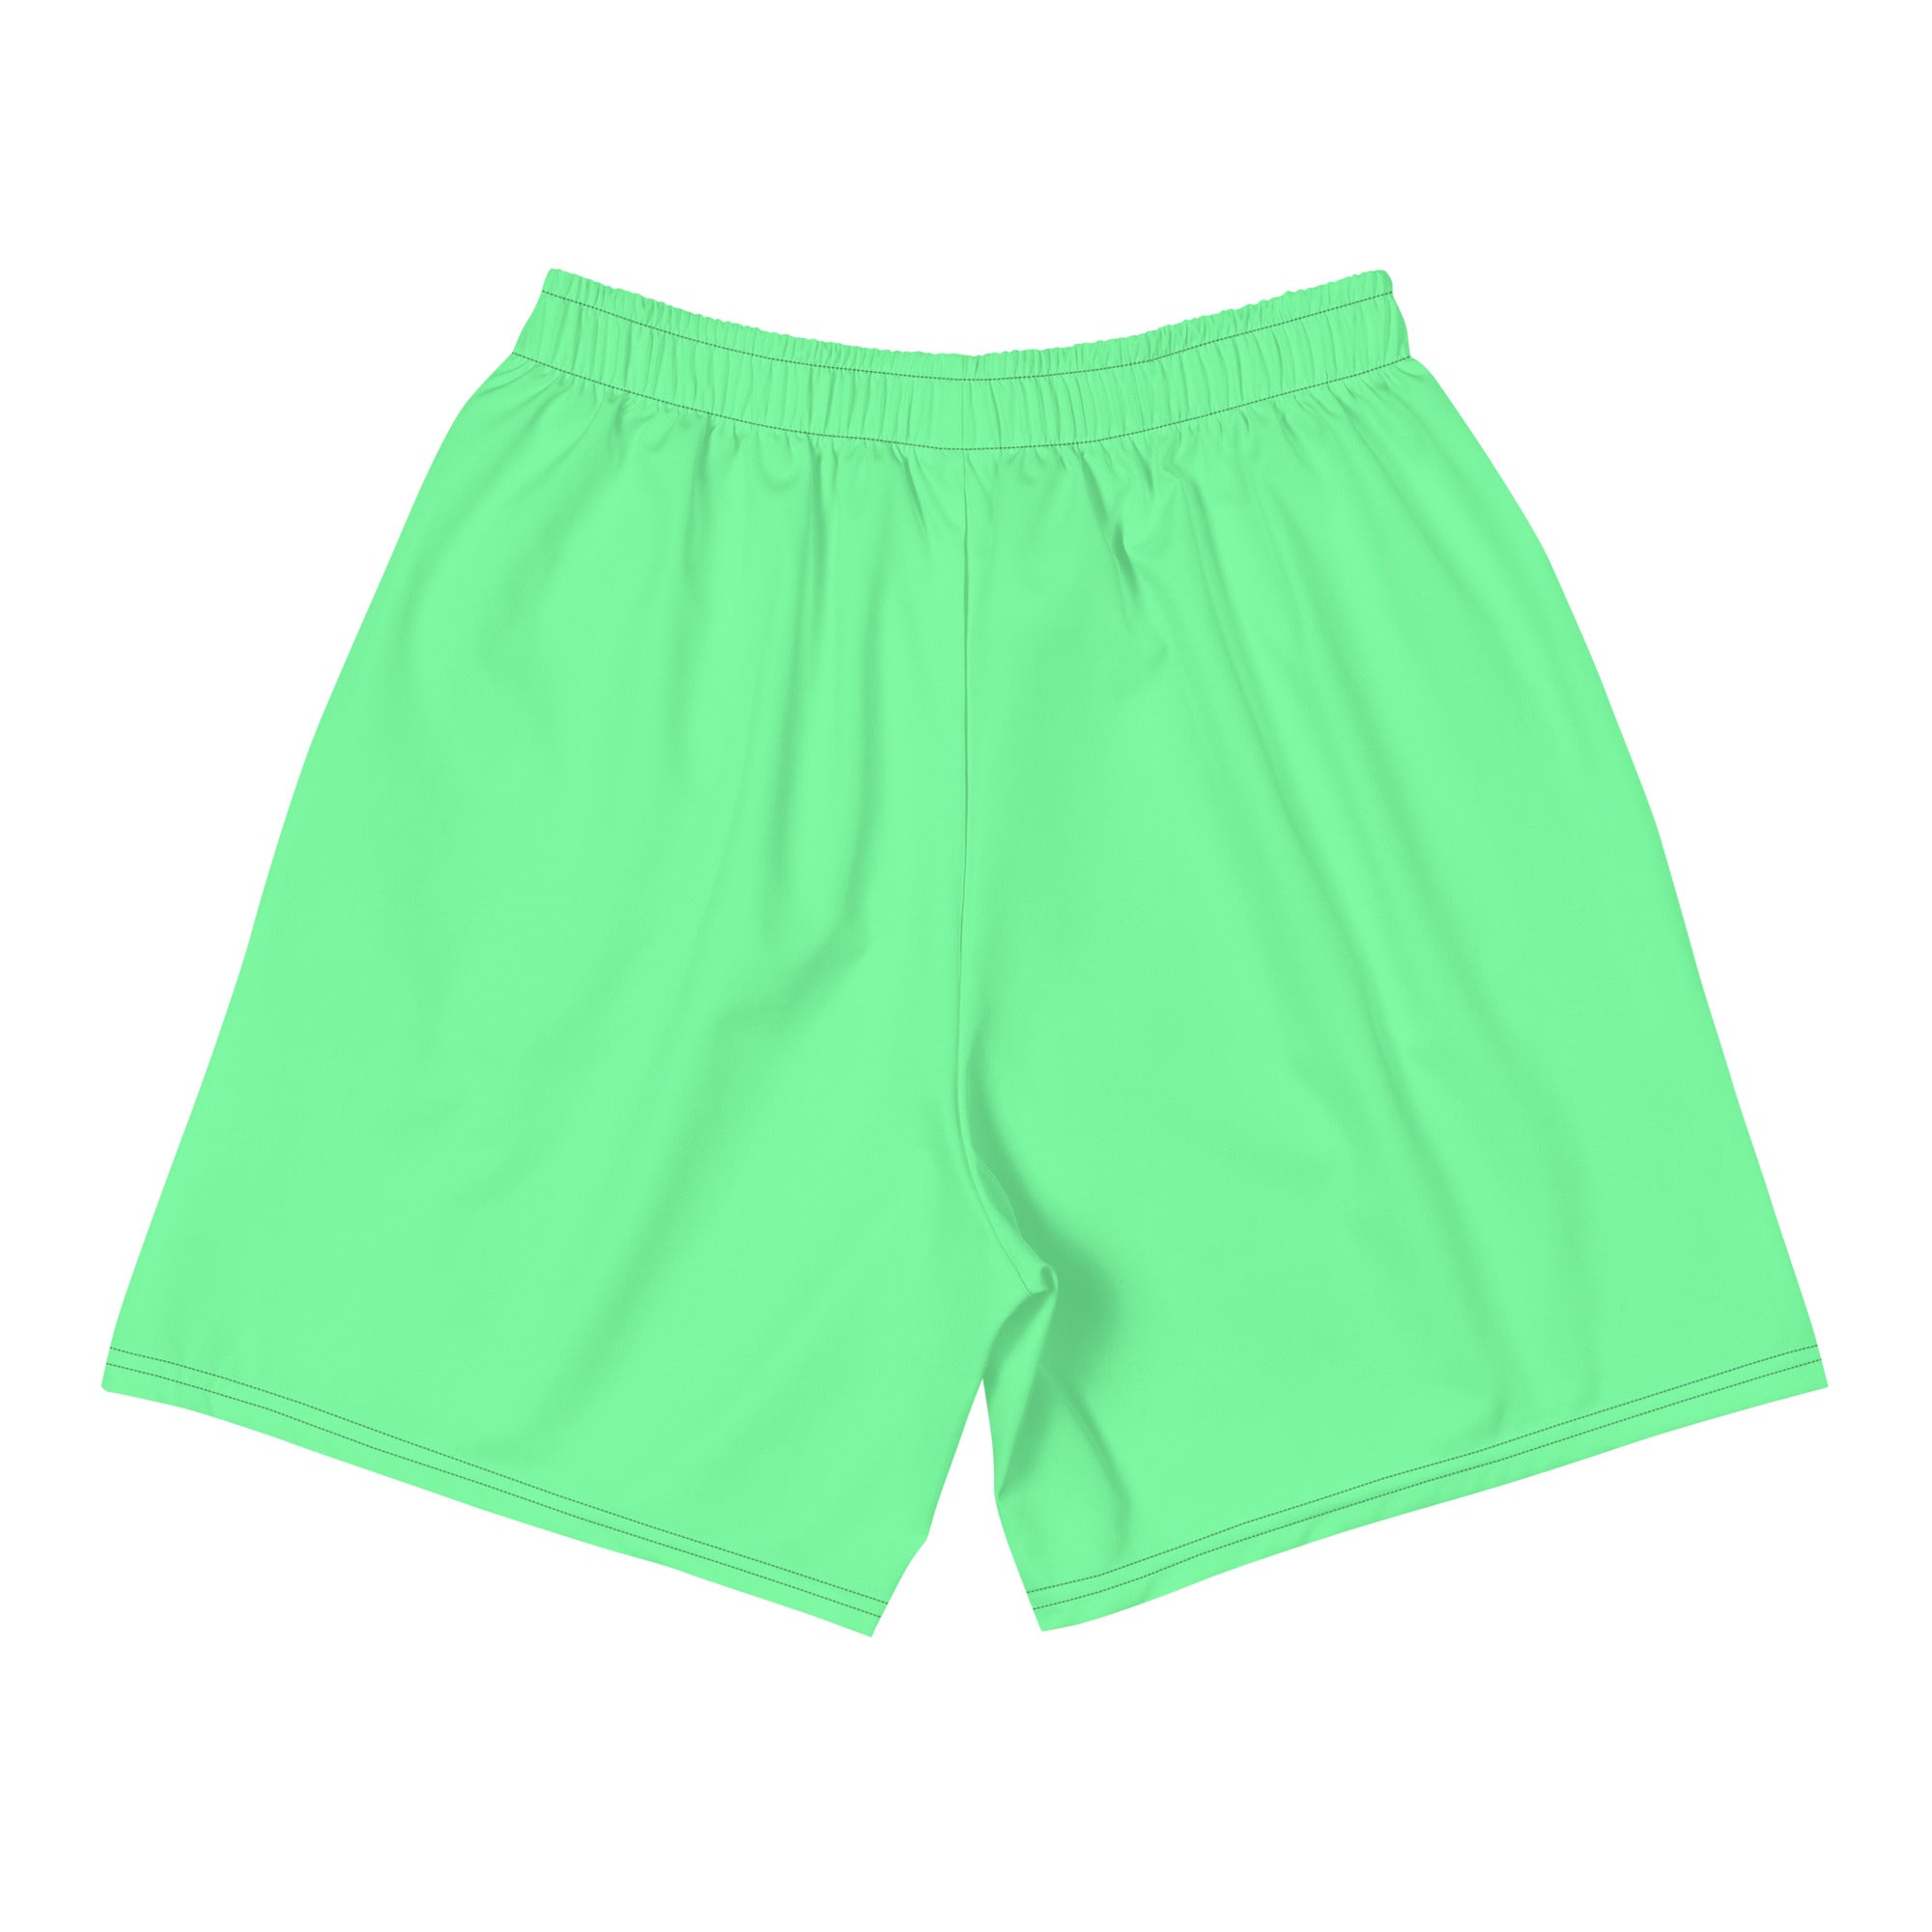 Green Toke Shorts